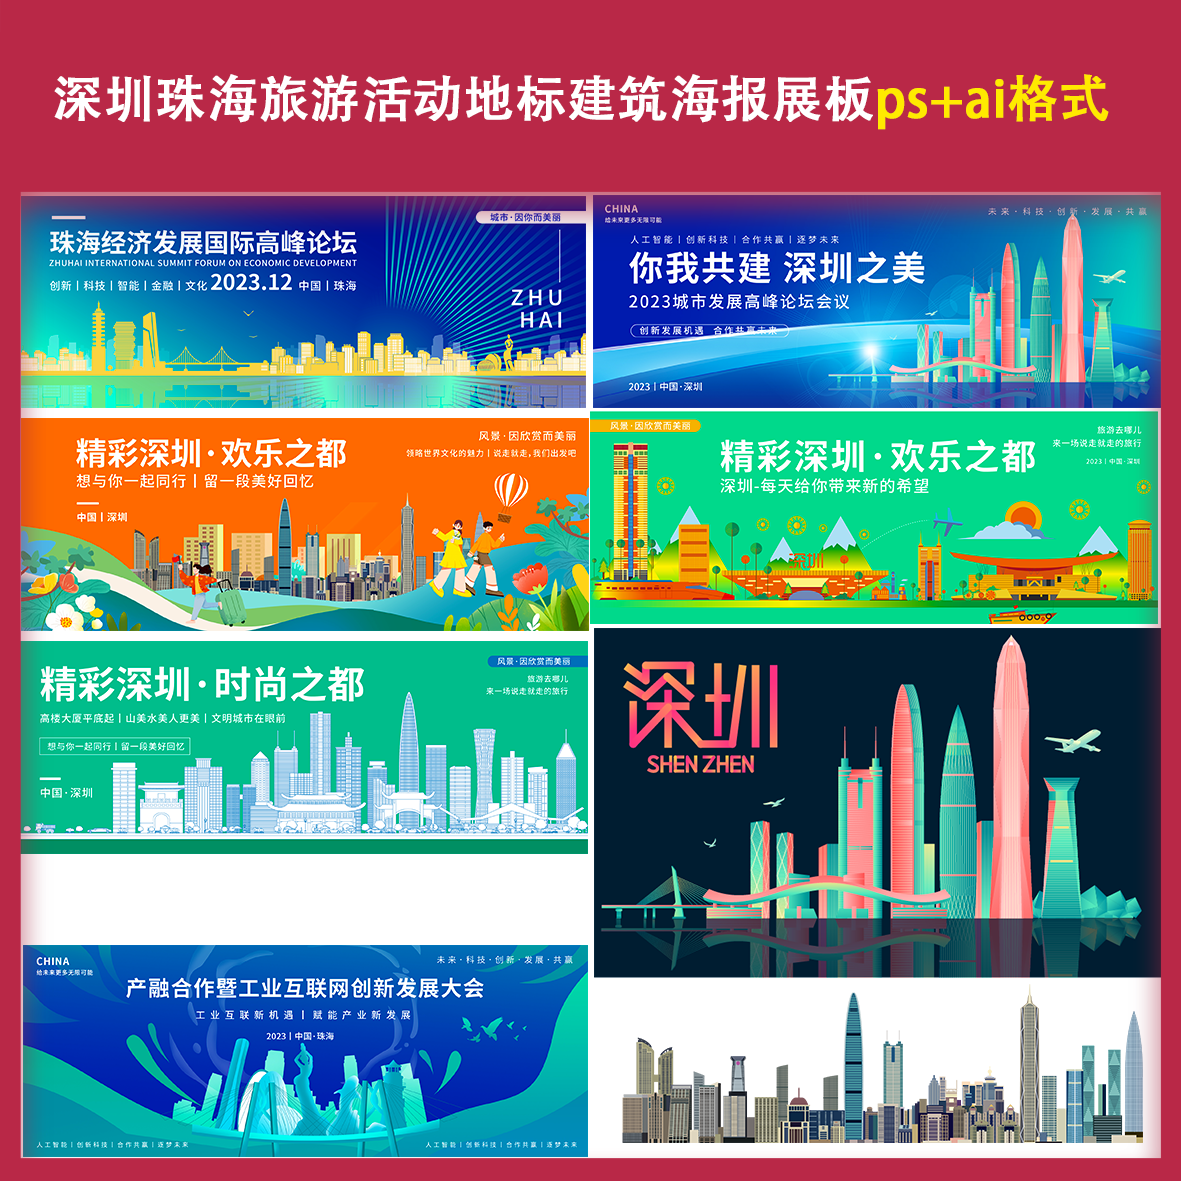 深圳珠海旅游活动地标建筑海报展板psai经济发展会议喷绘宣传设计